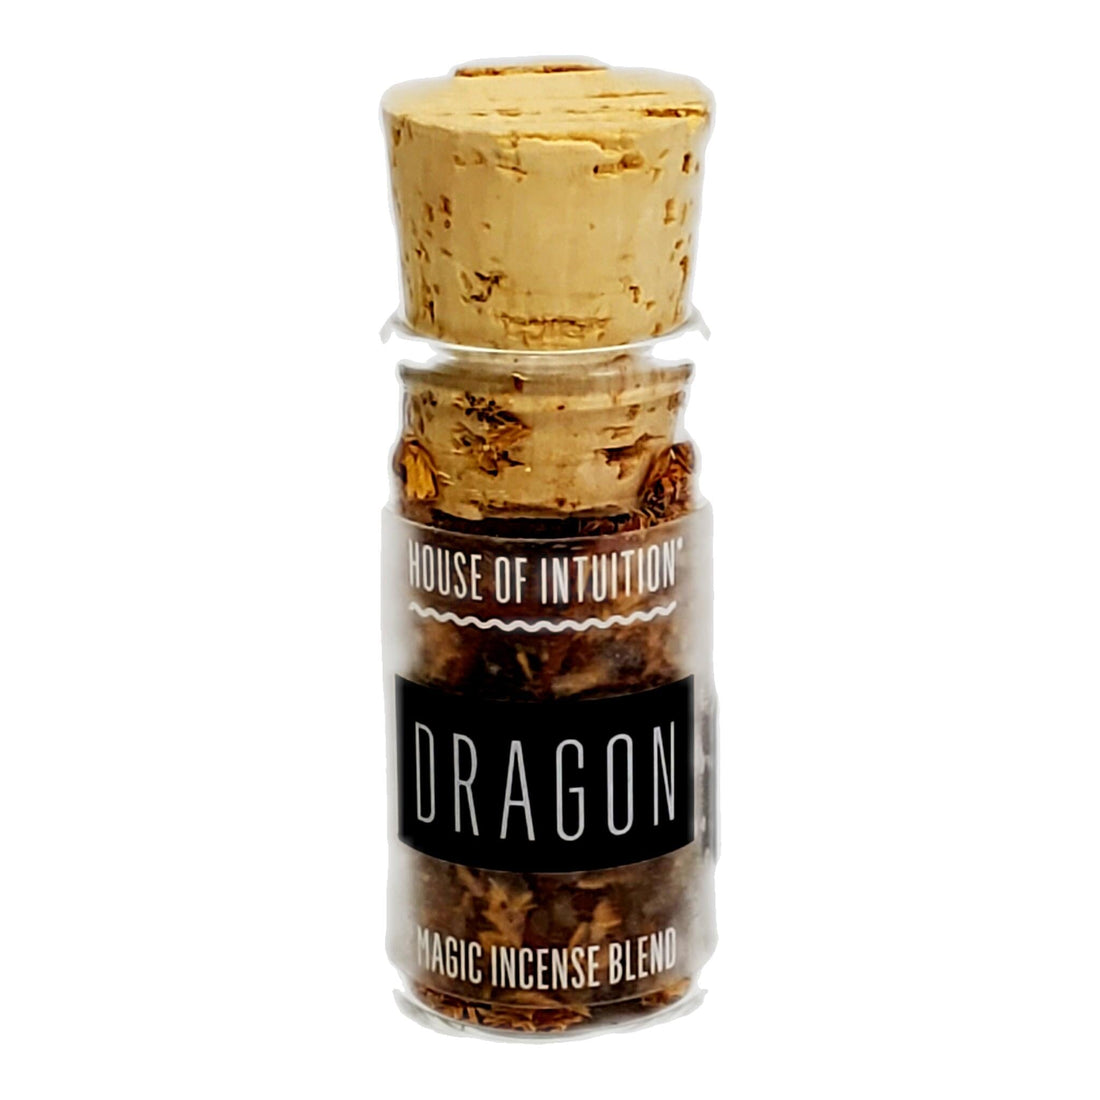 Dragons Blend Incense Blend HOI Incense Blend House of Intuition $14.00 Glass Jar 5/8 Dram 